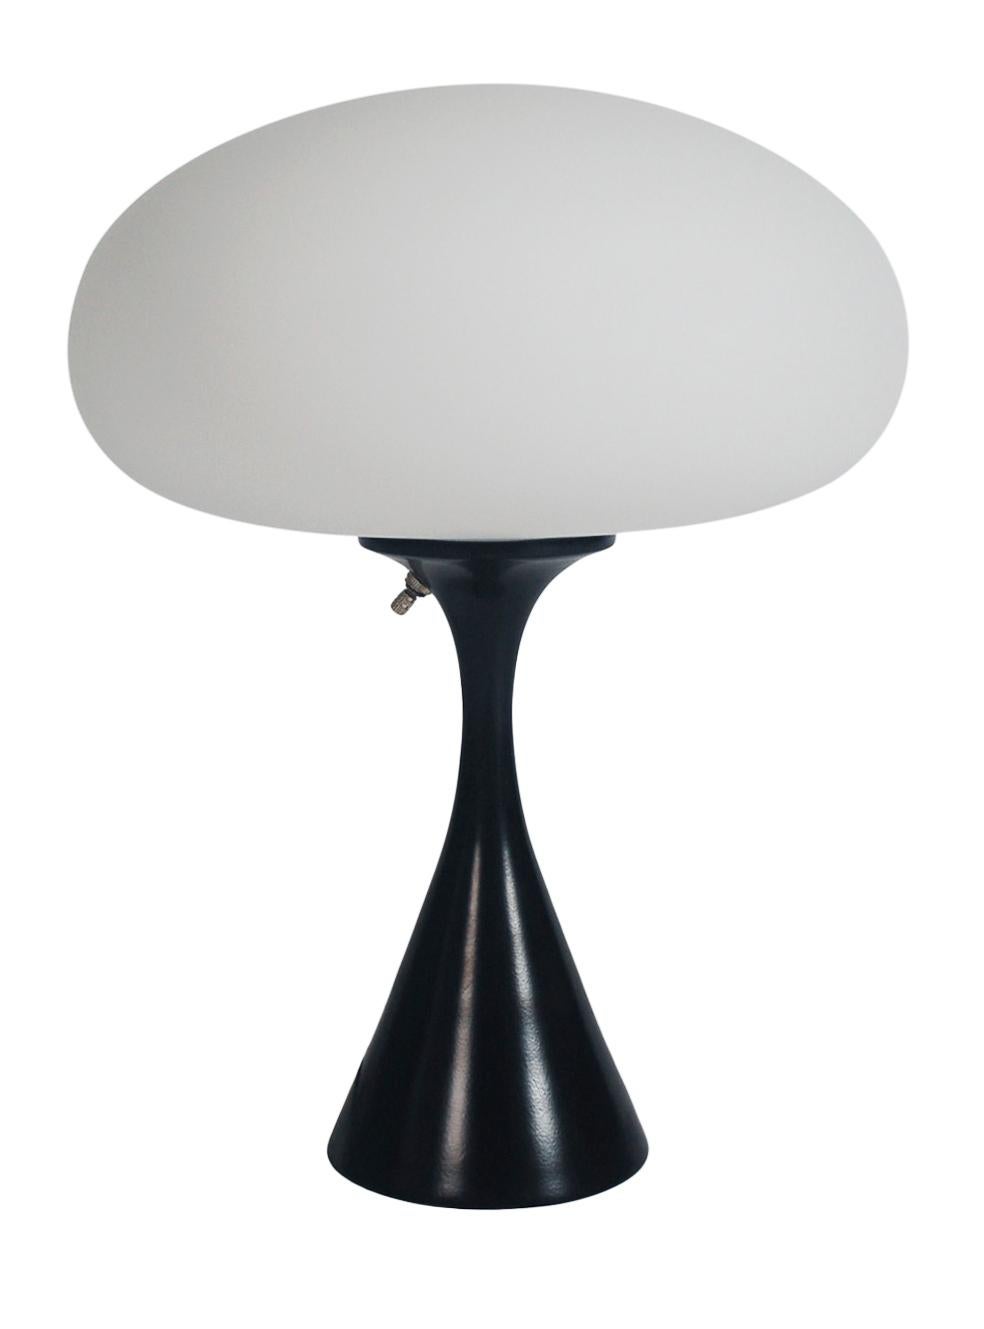 Eine hübsche Tischlampe in konischer Pilzform nach Laurel Lamp Company. Die Leuchte hat einen Sockel aus Aluminiumguss mit schwarzer Pulverbeschichtung und einen mundgeblasenen Lampenschirm aus Milchglas.